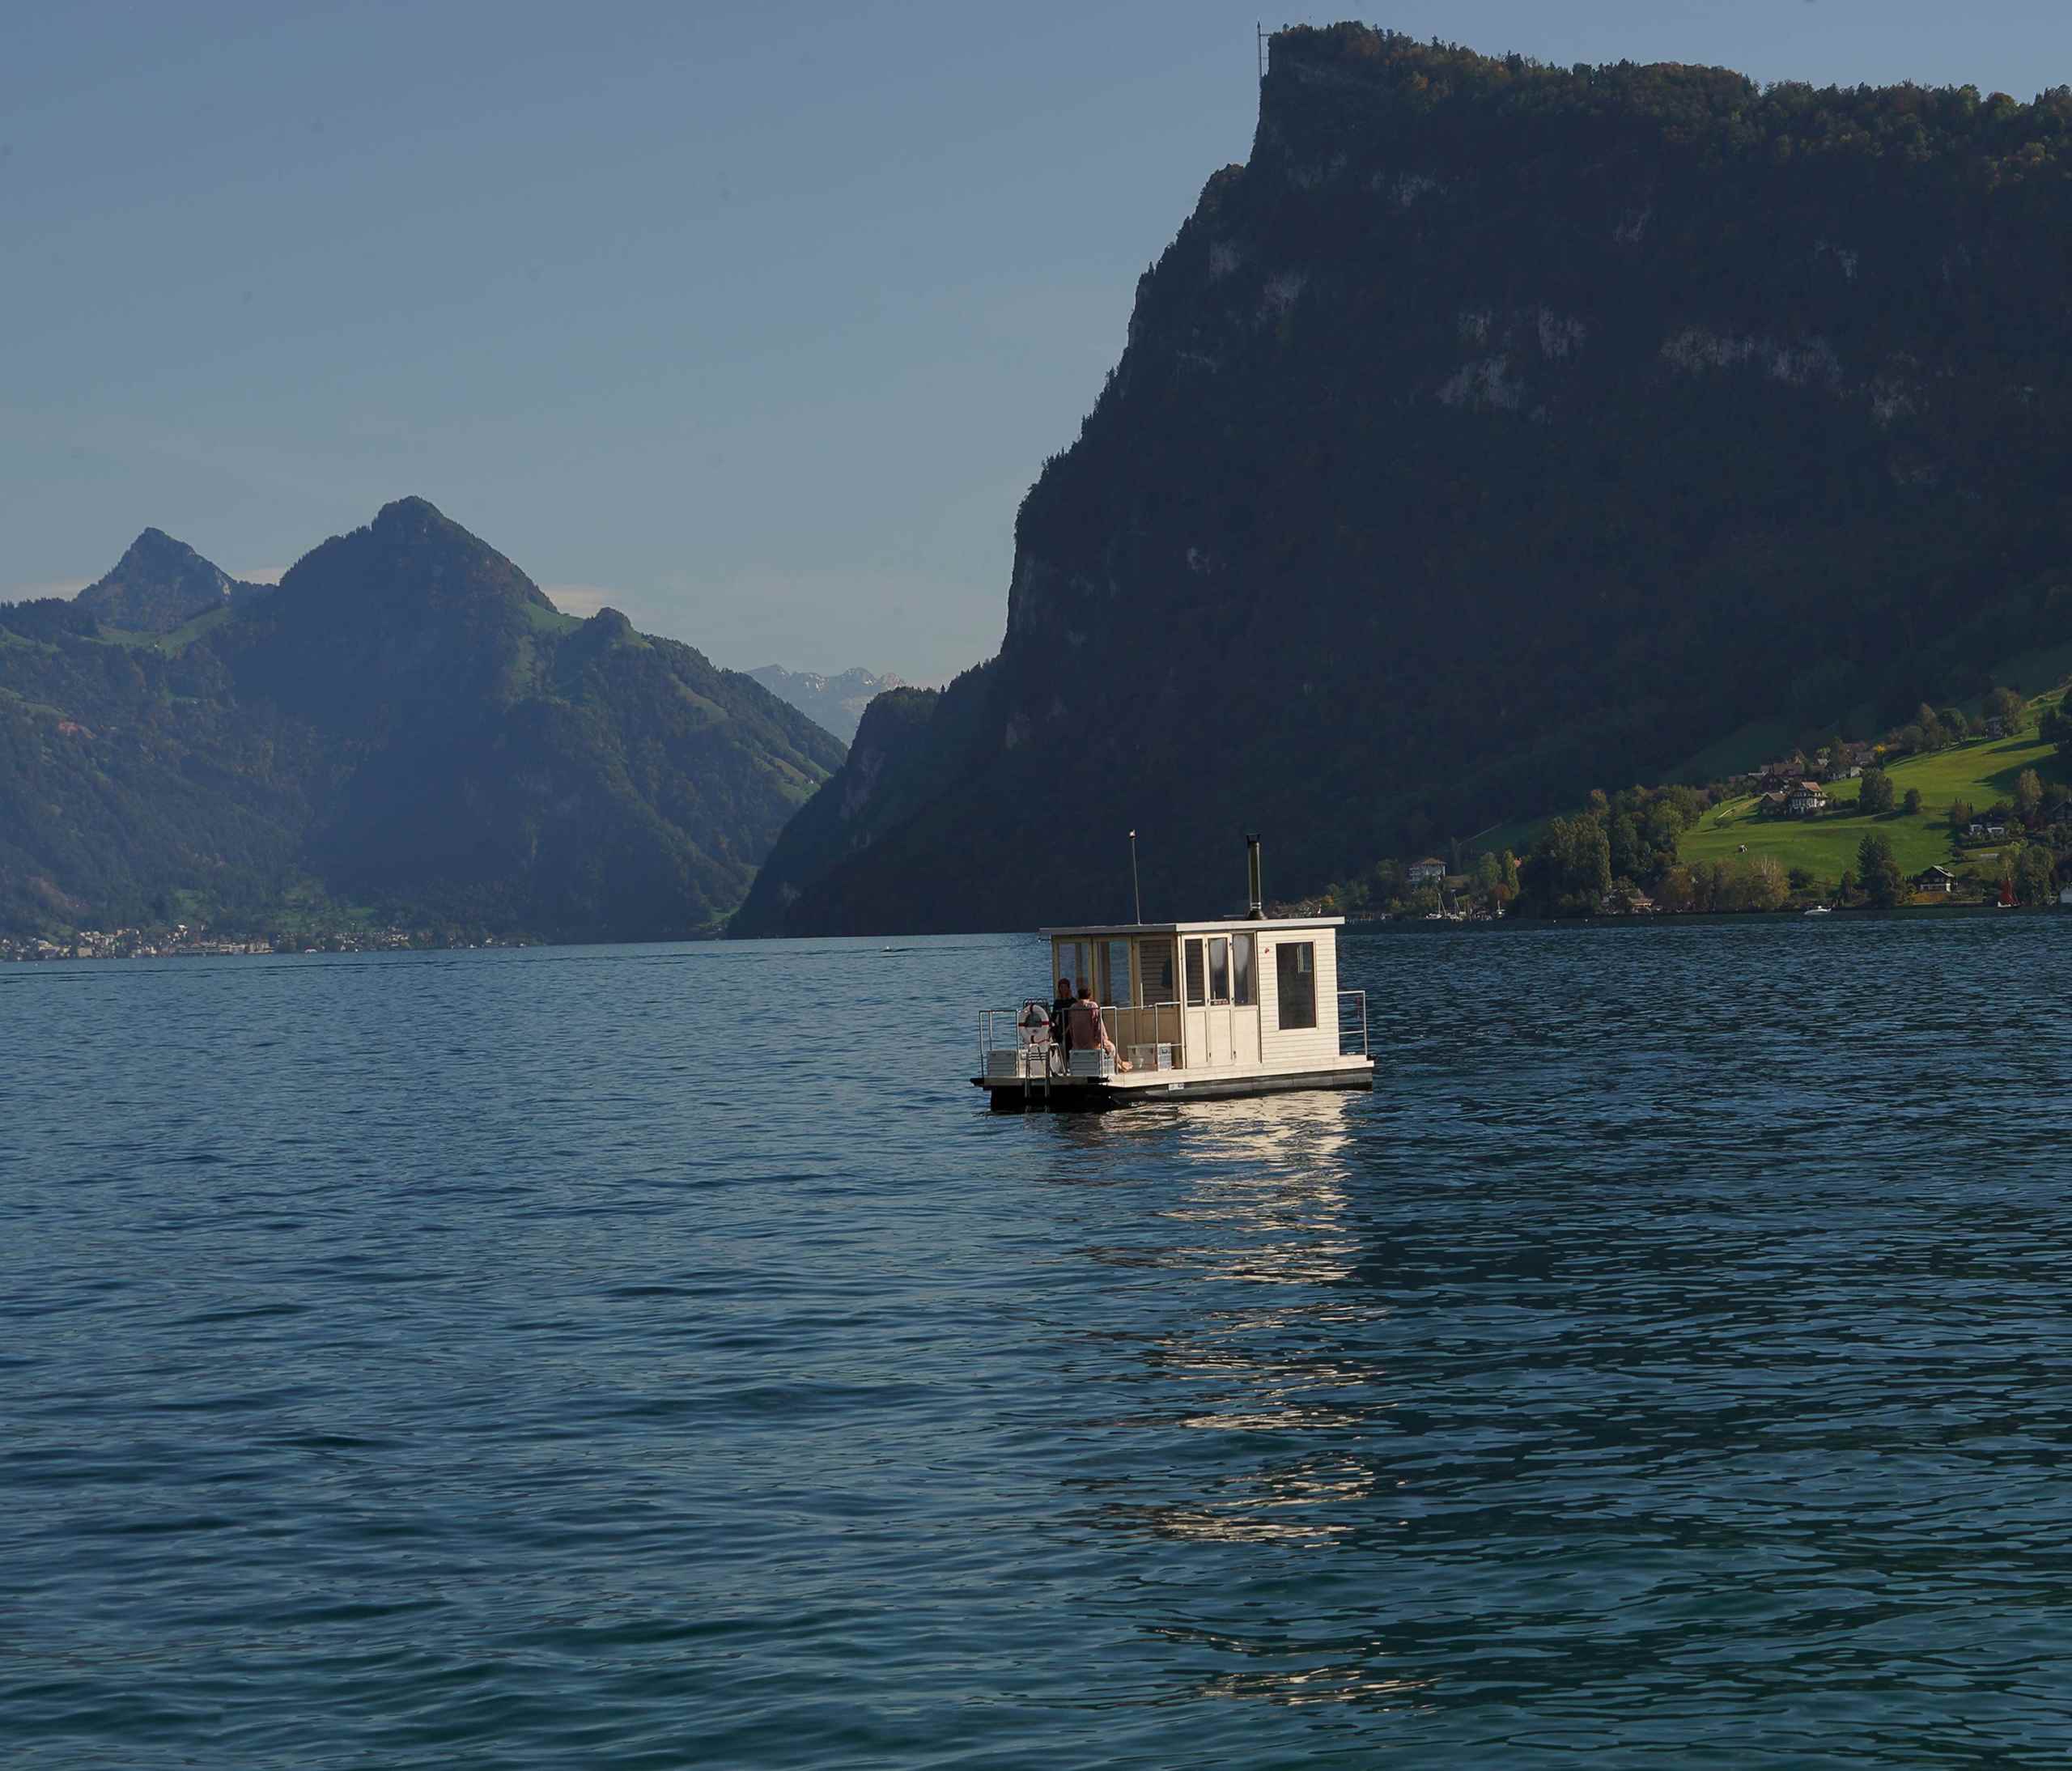 Saunaboot Breakfast - das Sauna Frühstücks Erlebnis in Luzern mitten auf dem Vierwaldstättersee